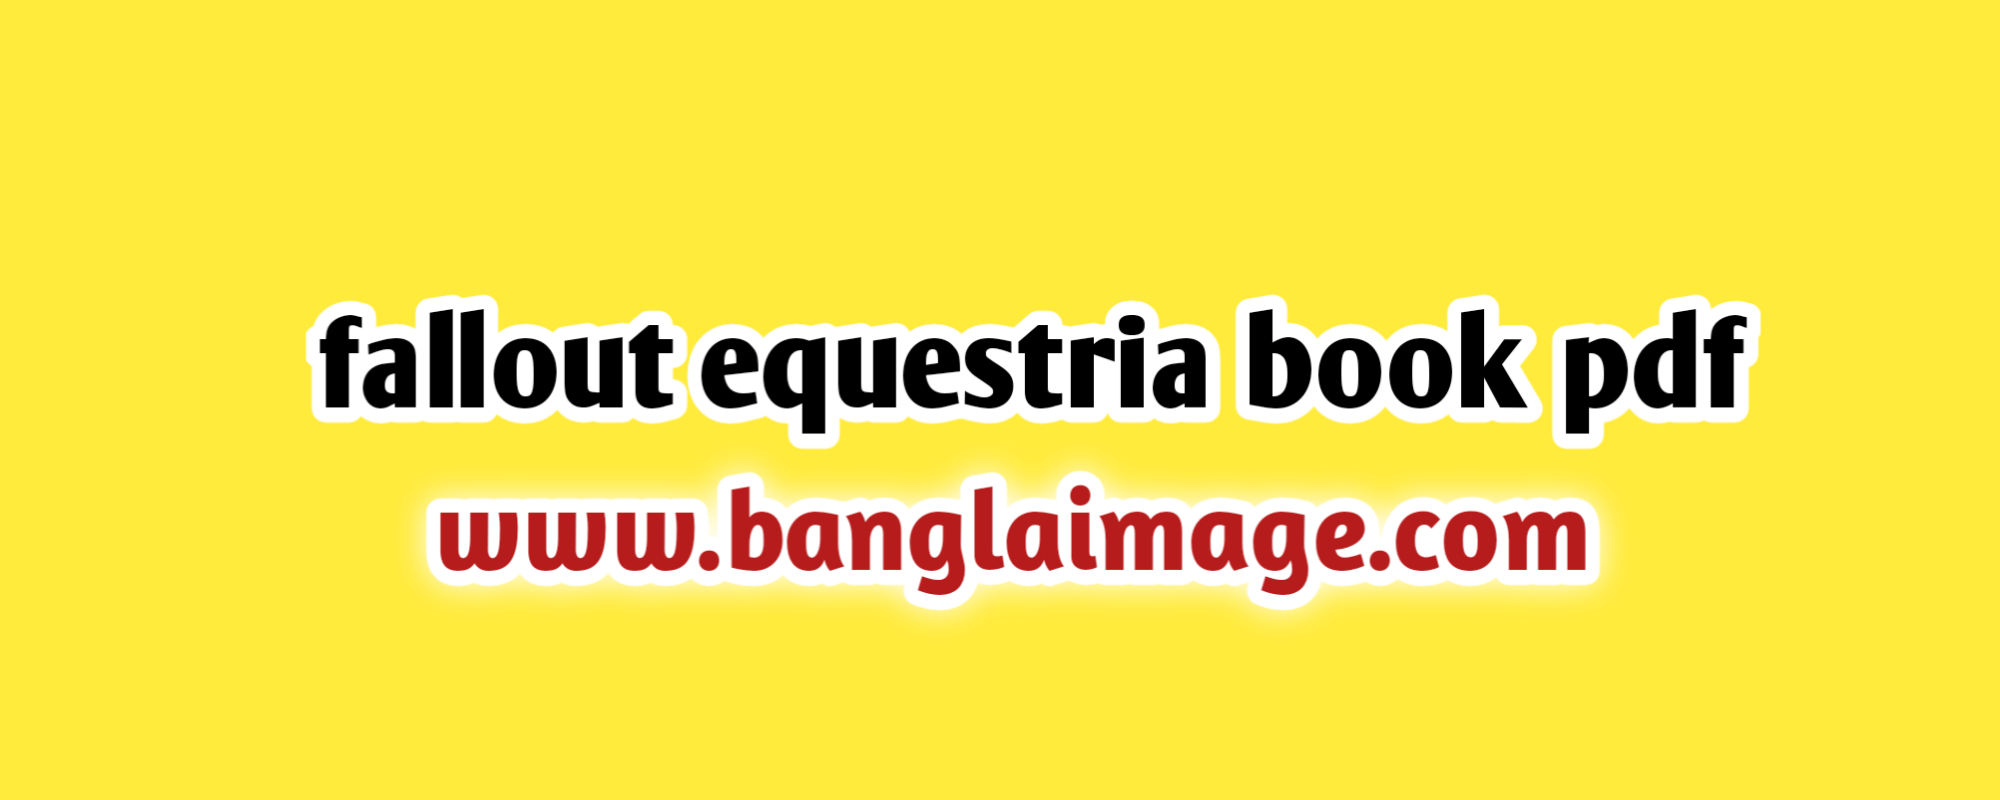 fallout equestria book pdf, fallout equestria book pdf online, fallout equestria book pdf free, the fallout equestria book pdf online